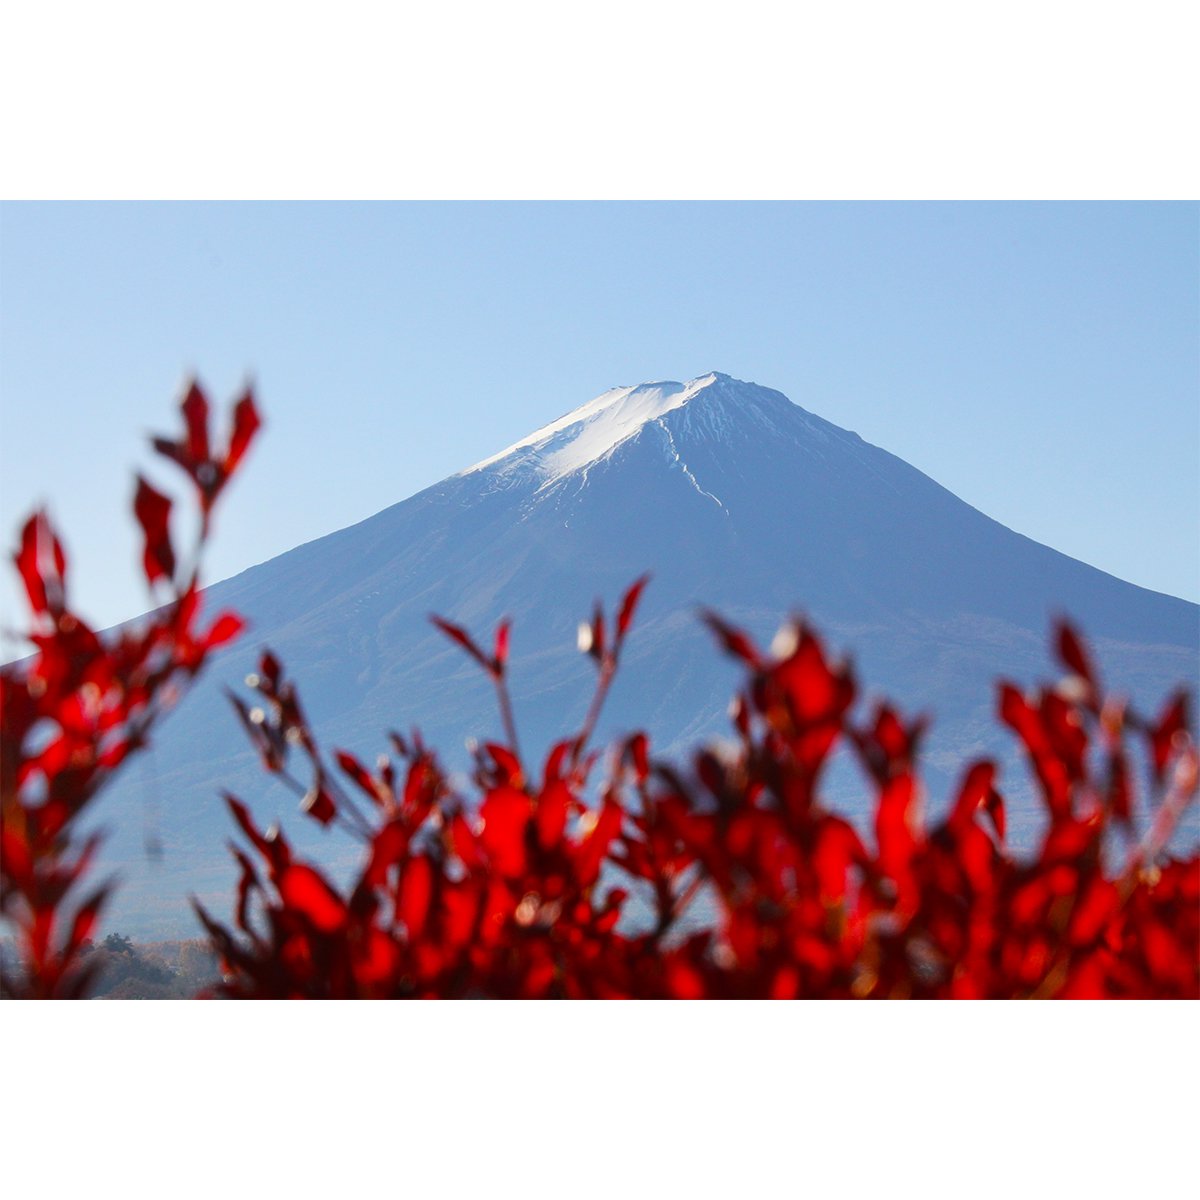 テラウチマサト作品<br>「LETTERS〜一緒に見た富士山〜#005」<br>A3サイズ